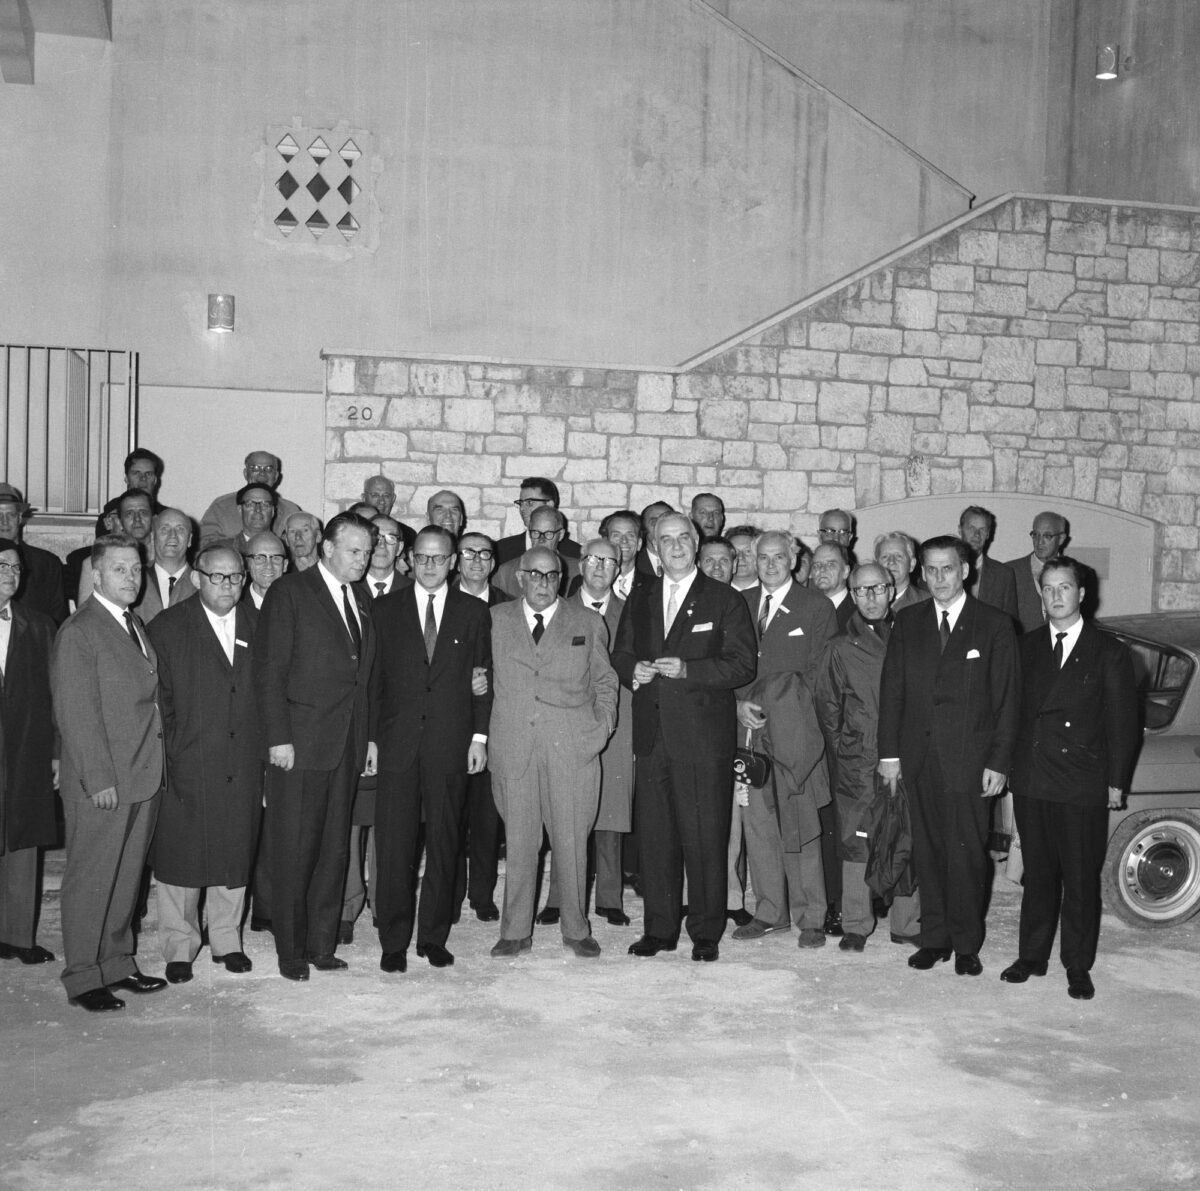 Αθήνα, 24 Οκτωβρίου 1963, Άγρας 20, βράδυ. Επίσκεψη από μέλη της Σουηδικής κοινότητας στην Αθήνα για χορωδιακά συγχαρητήρια. Δίπλα στον Σεφέρη ο Σουηδός νεοελληνιστής Στούρε Λινέρ, μόνιμος εκπρόσωπος του Αναπτυξιακού προγράμματος του ΟΗΕ στην Ελλάδα. Φωτ.: Κώστας Μεγαλοκονόμου. ©Μουσείο Μπενάκη/Φωτογραφικά αρχεία. Πηγή εικόνας: Μουσείο Μπενάκη.